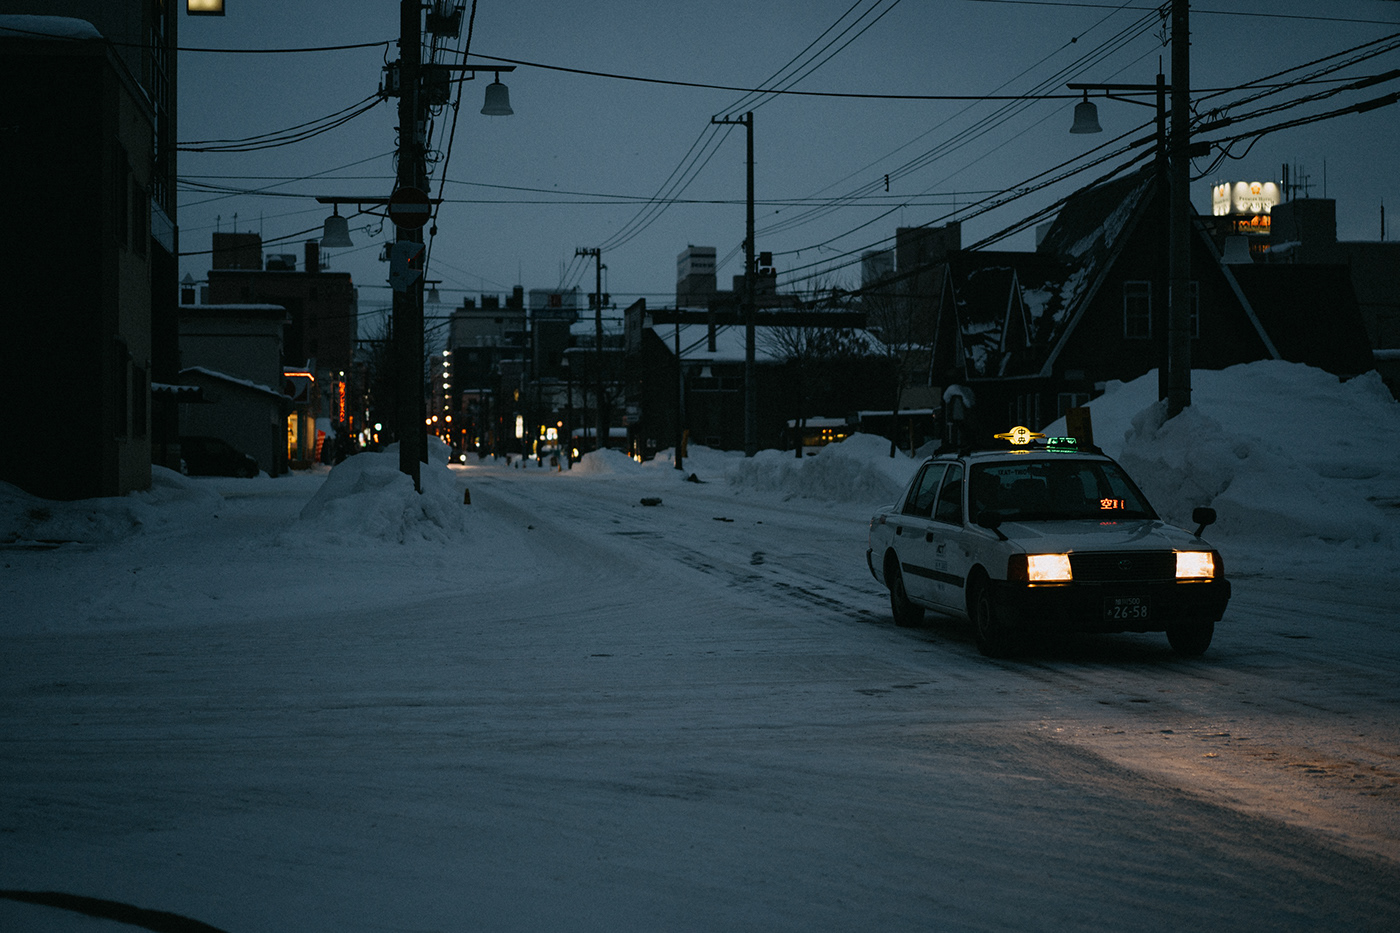 札幌 北海道 旭川 美瑛 張道慈 街拍 攝影 Hokkaido winter streetphotography